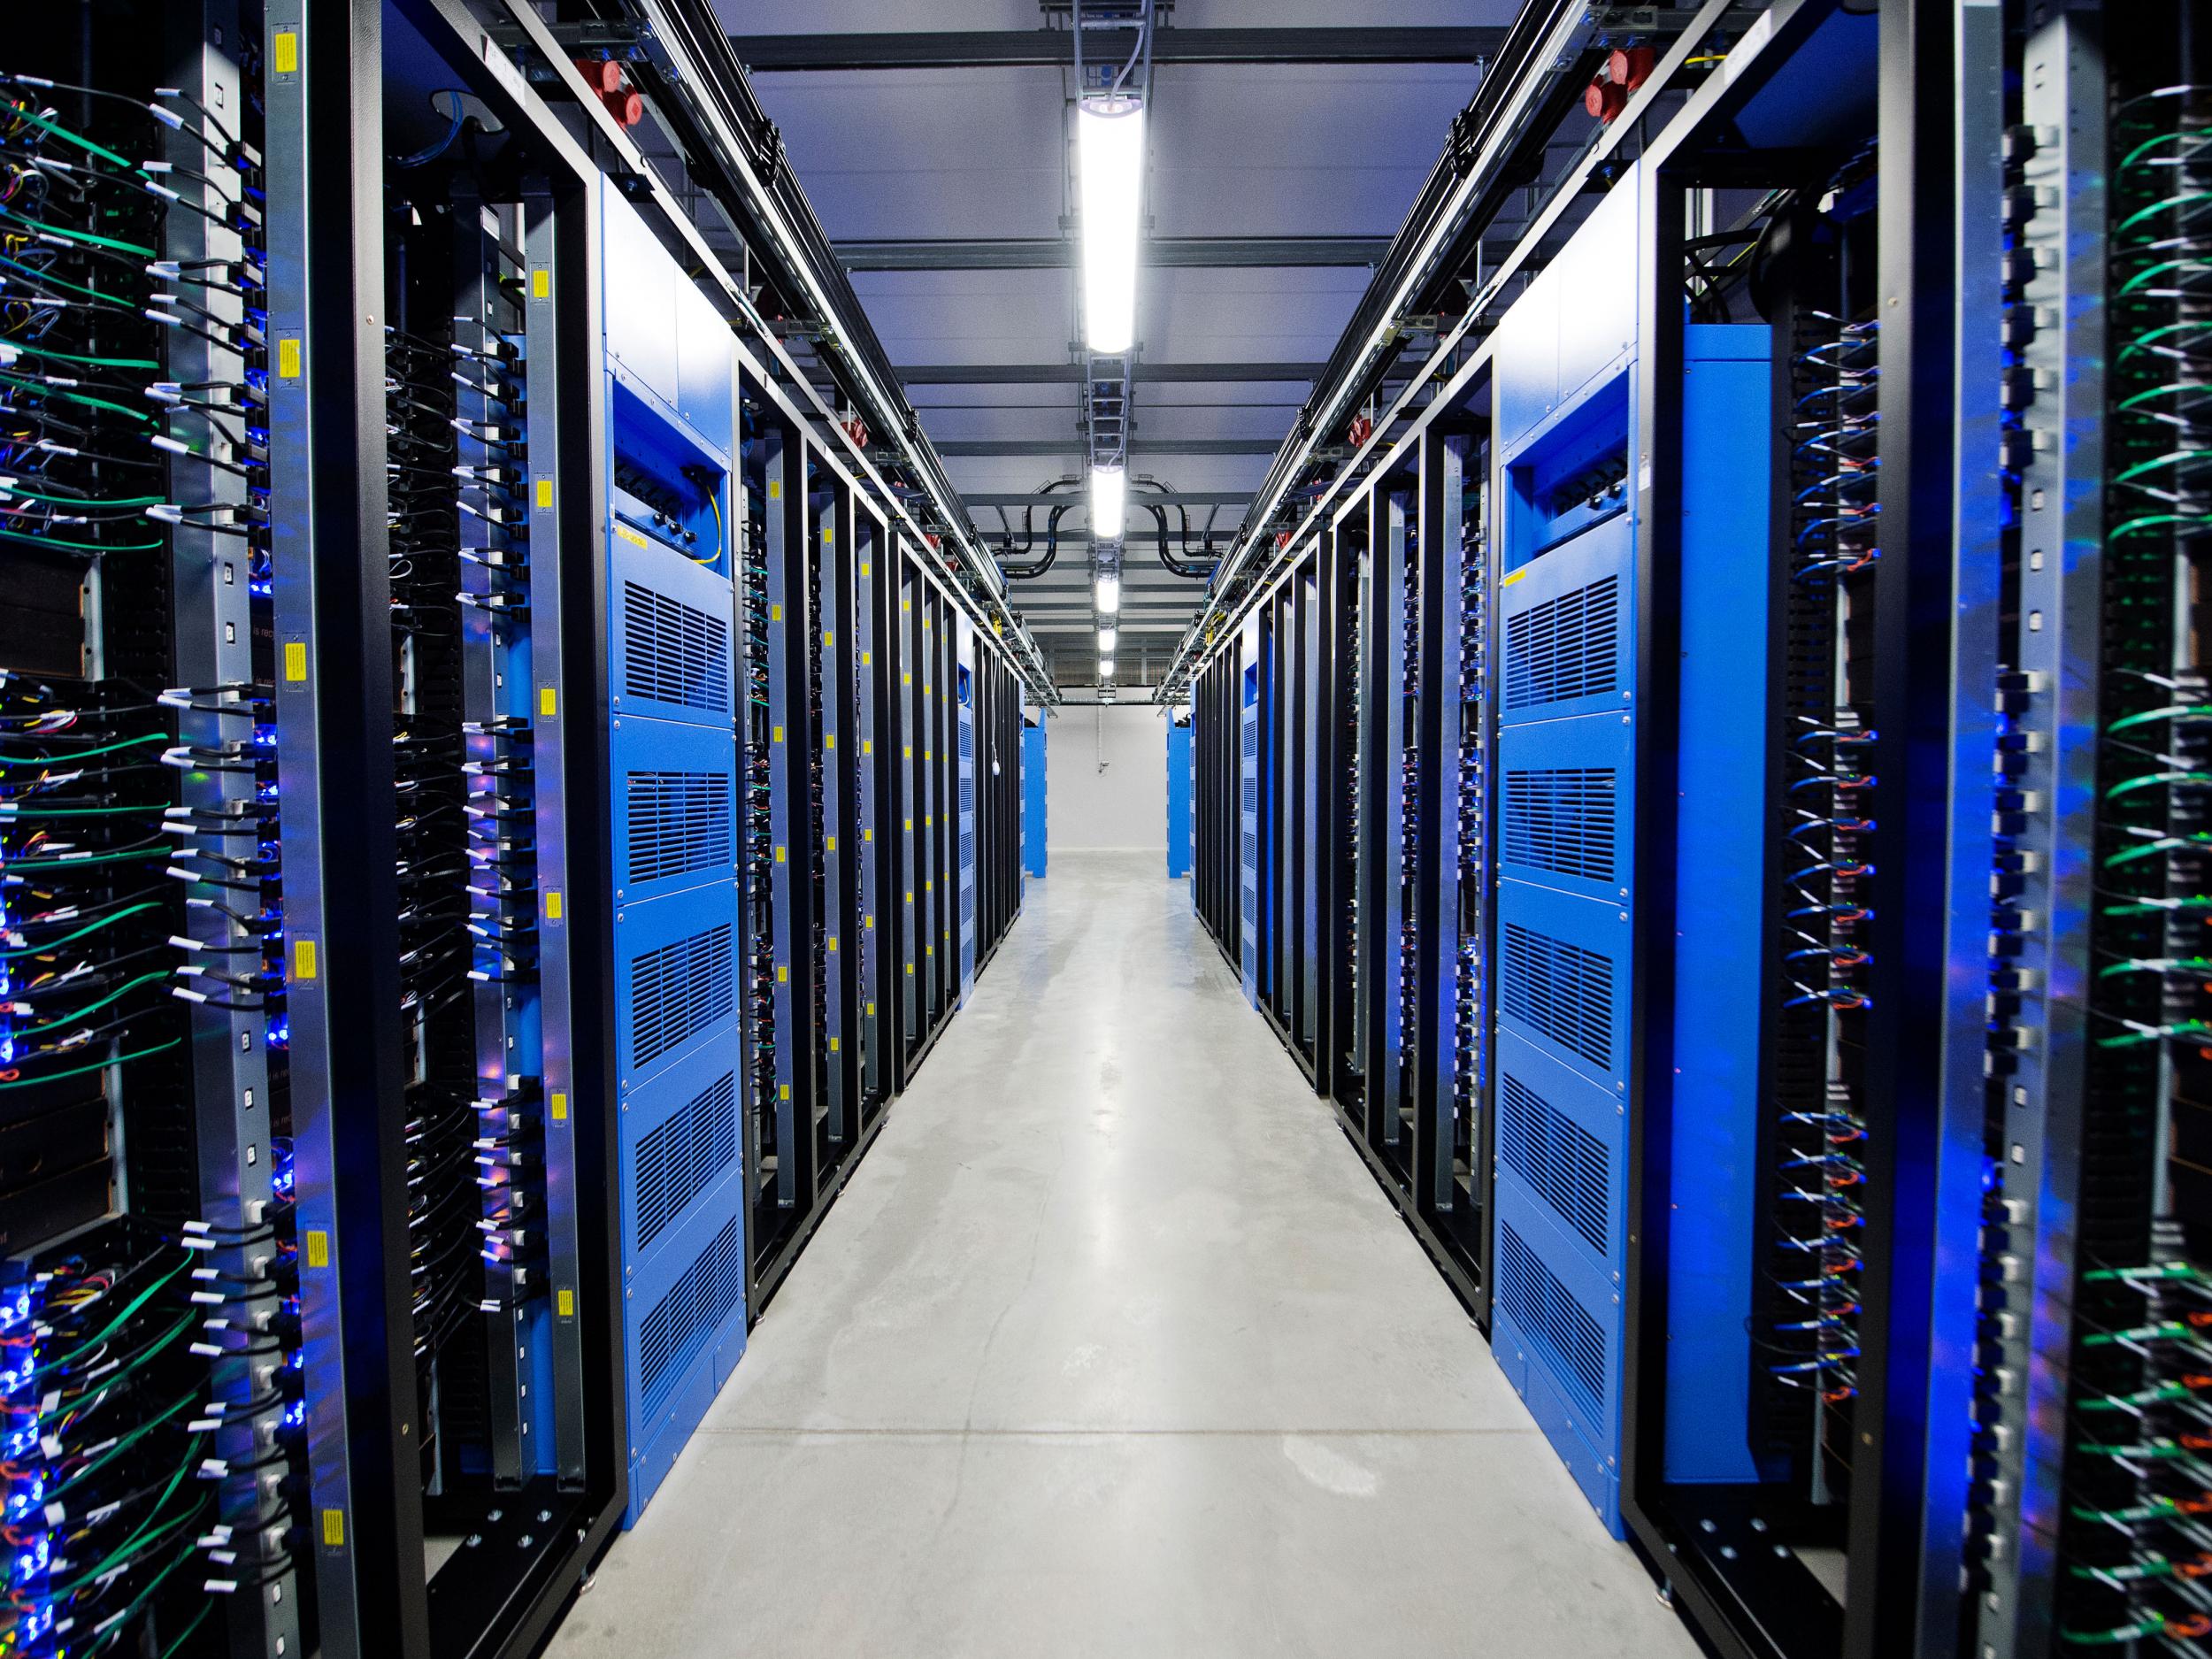 Серверы технической информации